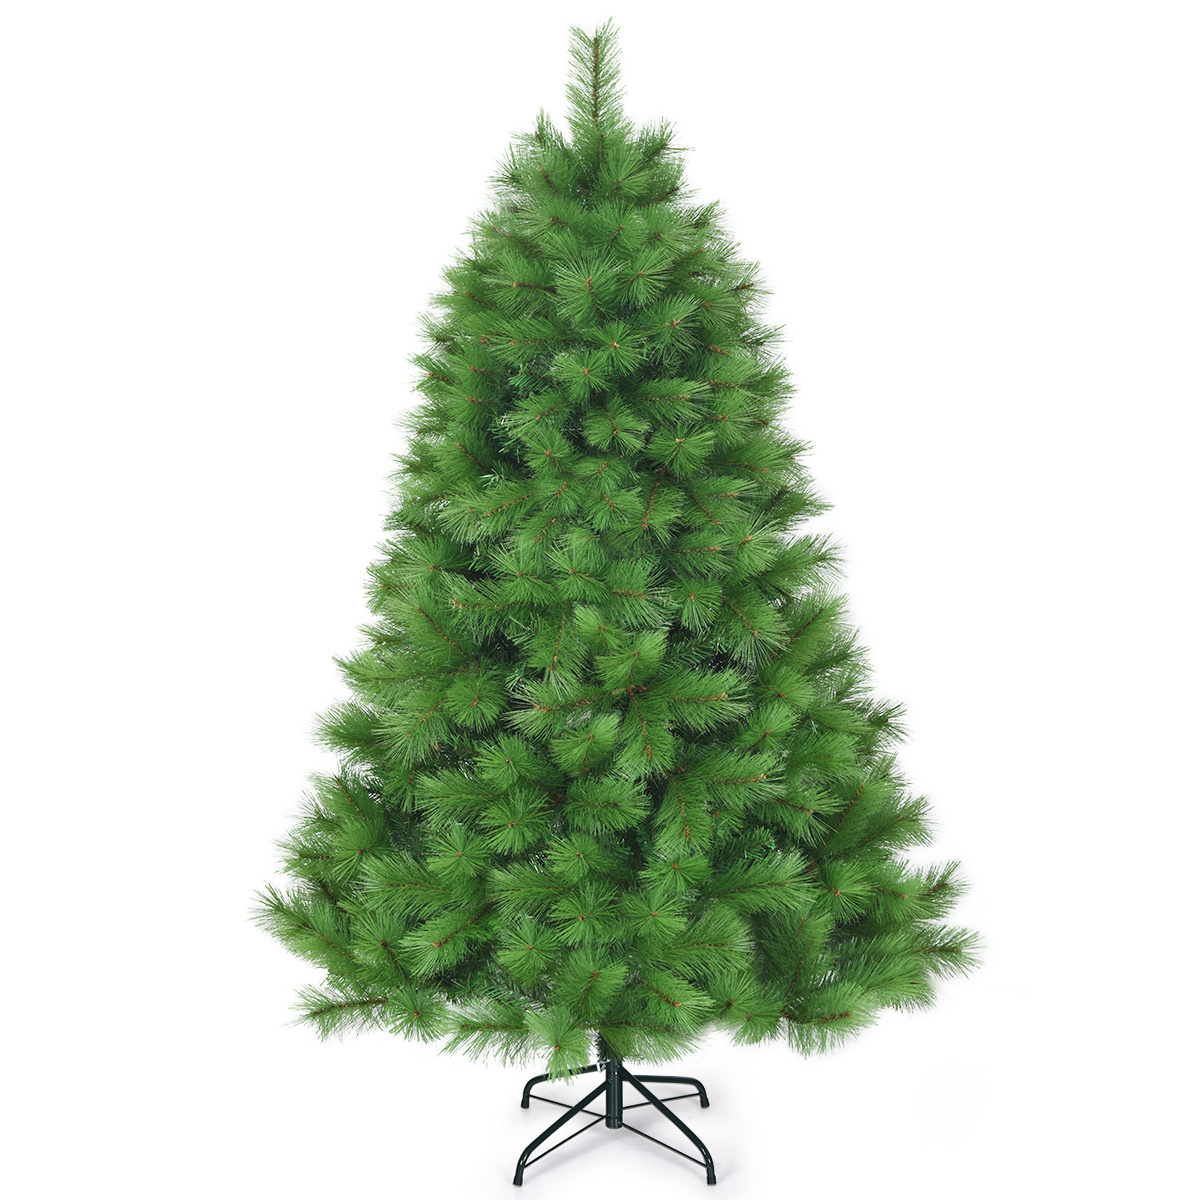 PVC nach günstig Kaufen-Coast 180 cm künstlicher Weihnachtsbaum Weihnachtsbaum pvc Nadeln künstlicher Baum mit Metallständer grün. Coast 180 cm künstlicher Weihnachtsbaum Weihnachtsbaum pvc Nadeln künstlicher Baum mit Metallständer grün <!